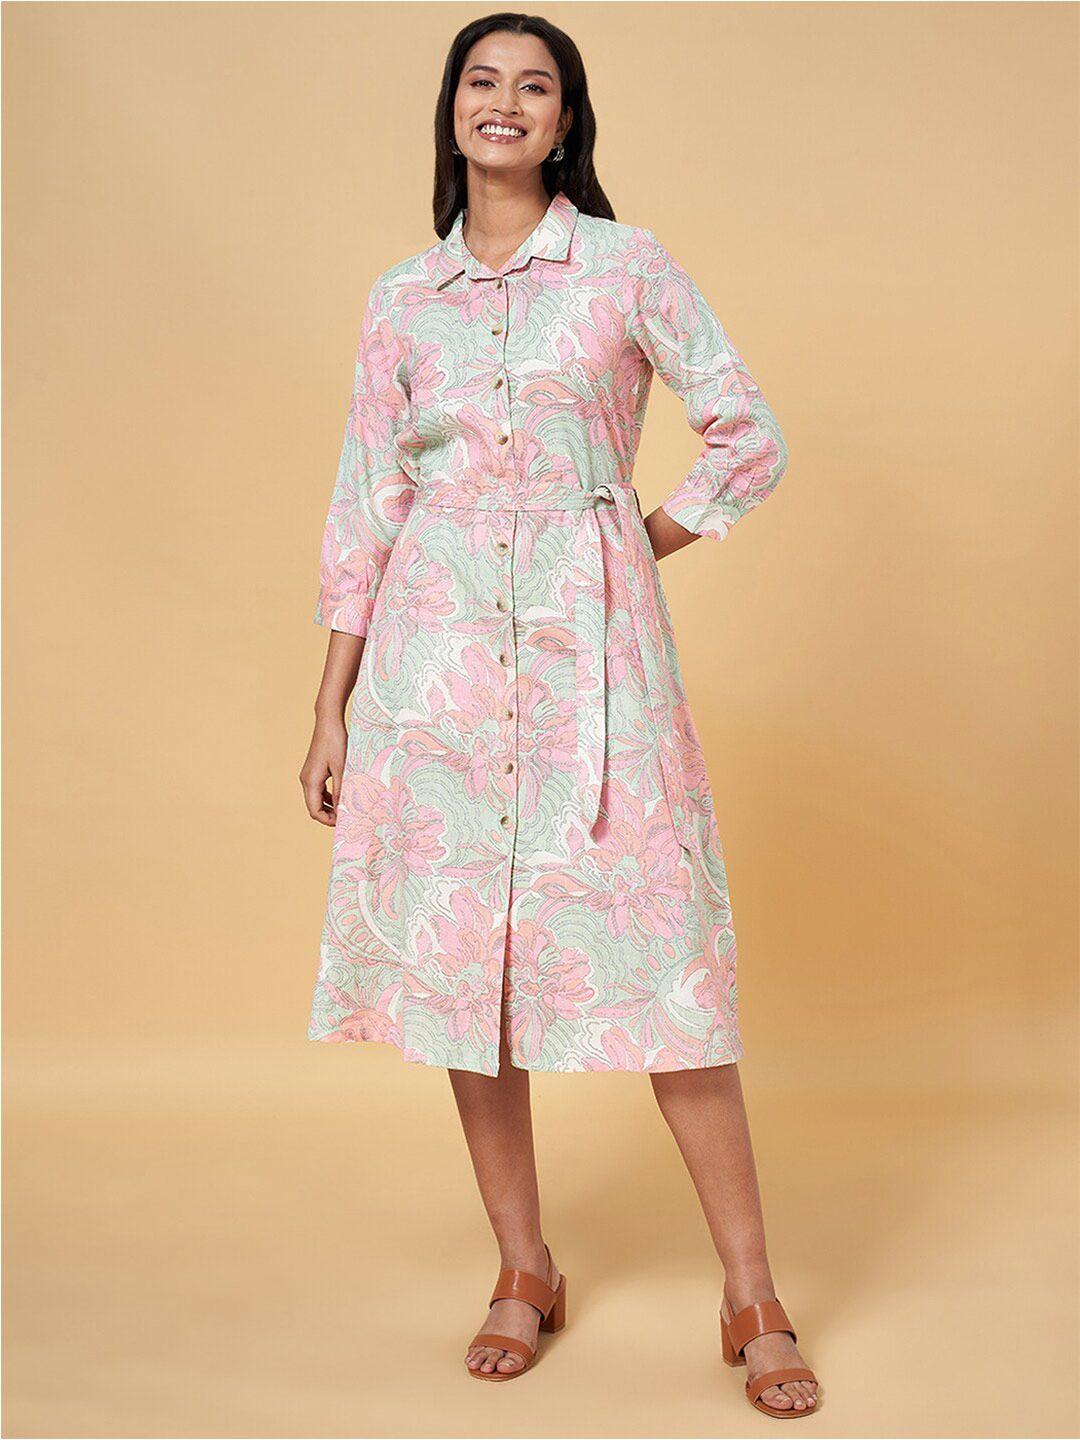 AKKRITI BY PANTALOONS Floral Printed Cuffed Sleeves Shirt Midi Dress